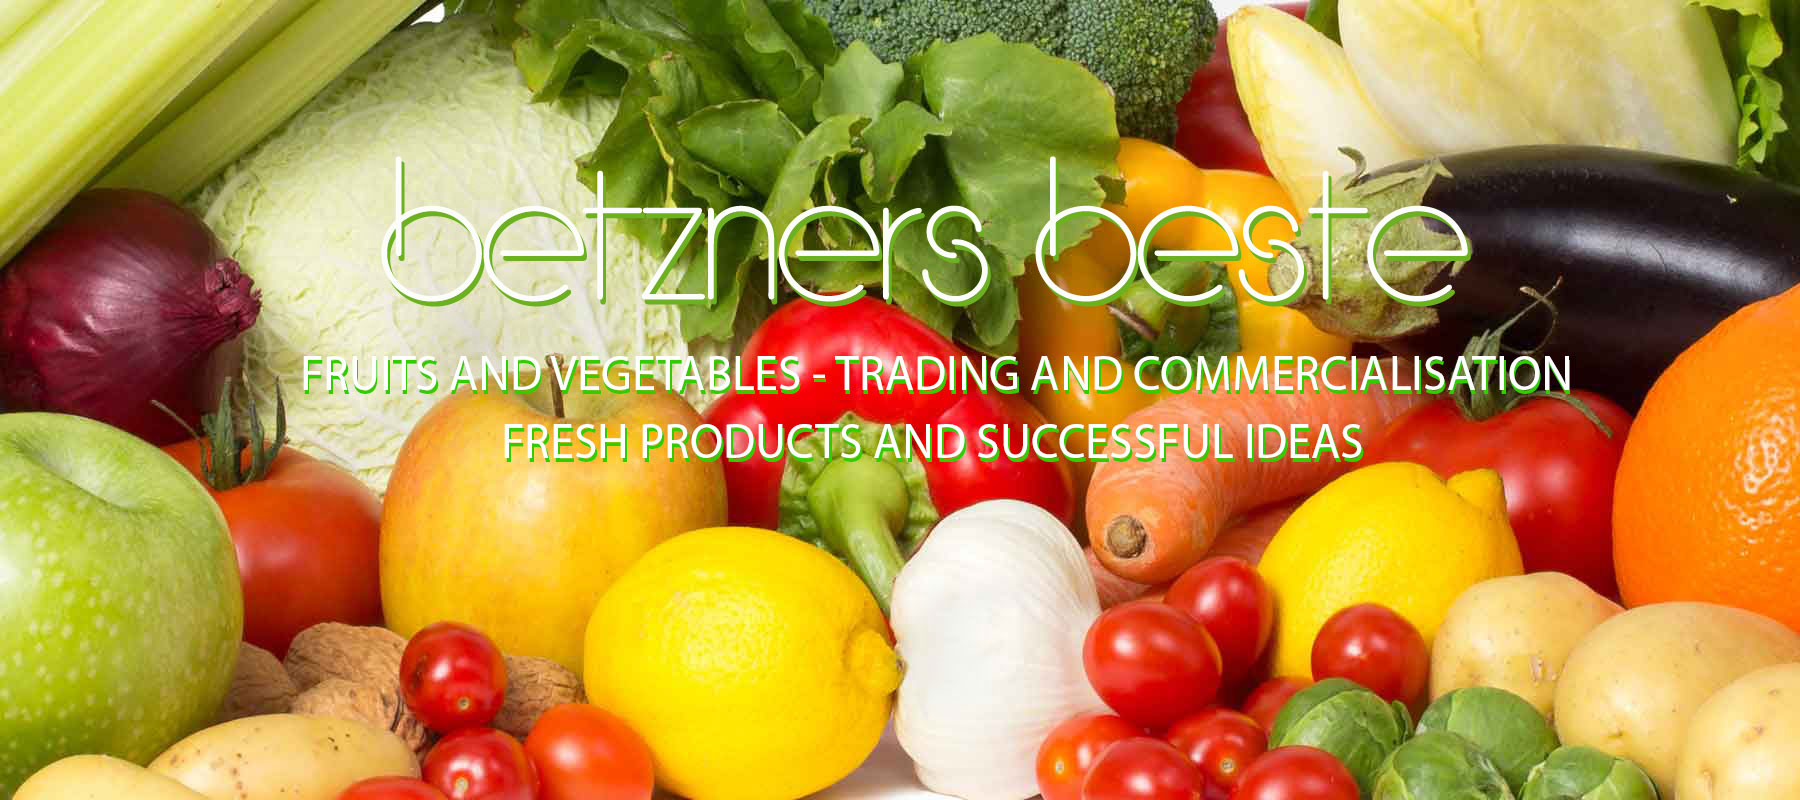 betzners beste fruits vegetables